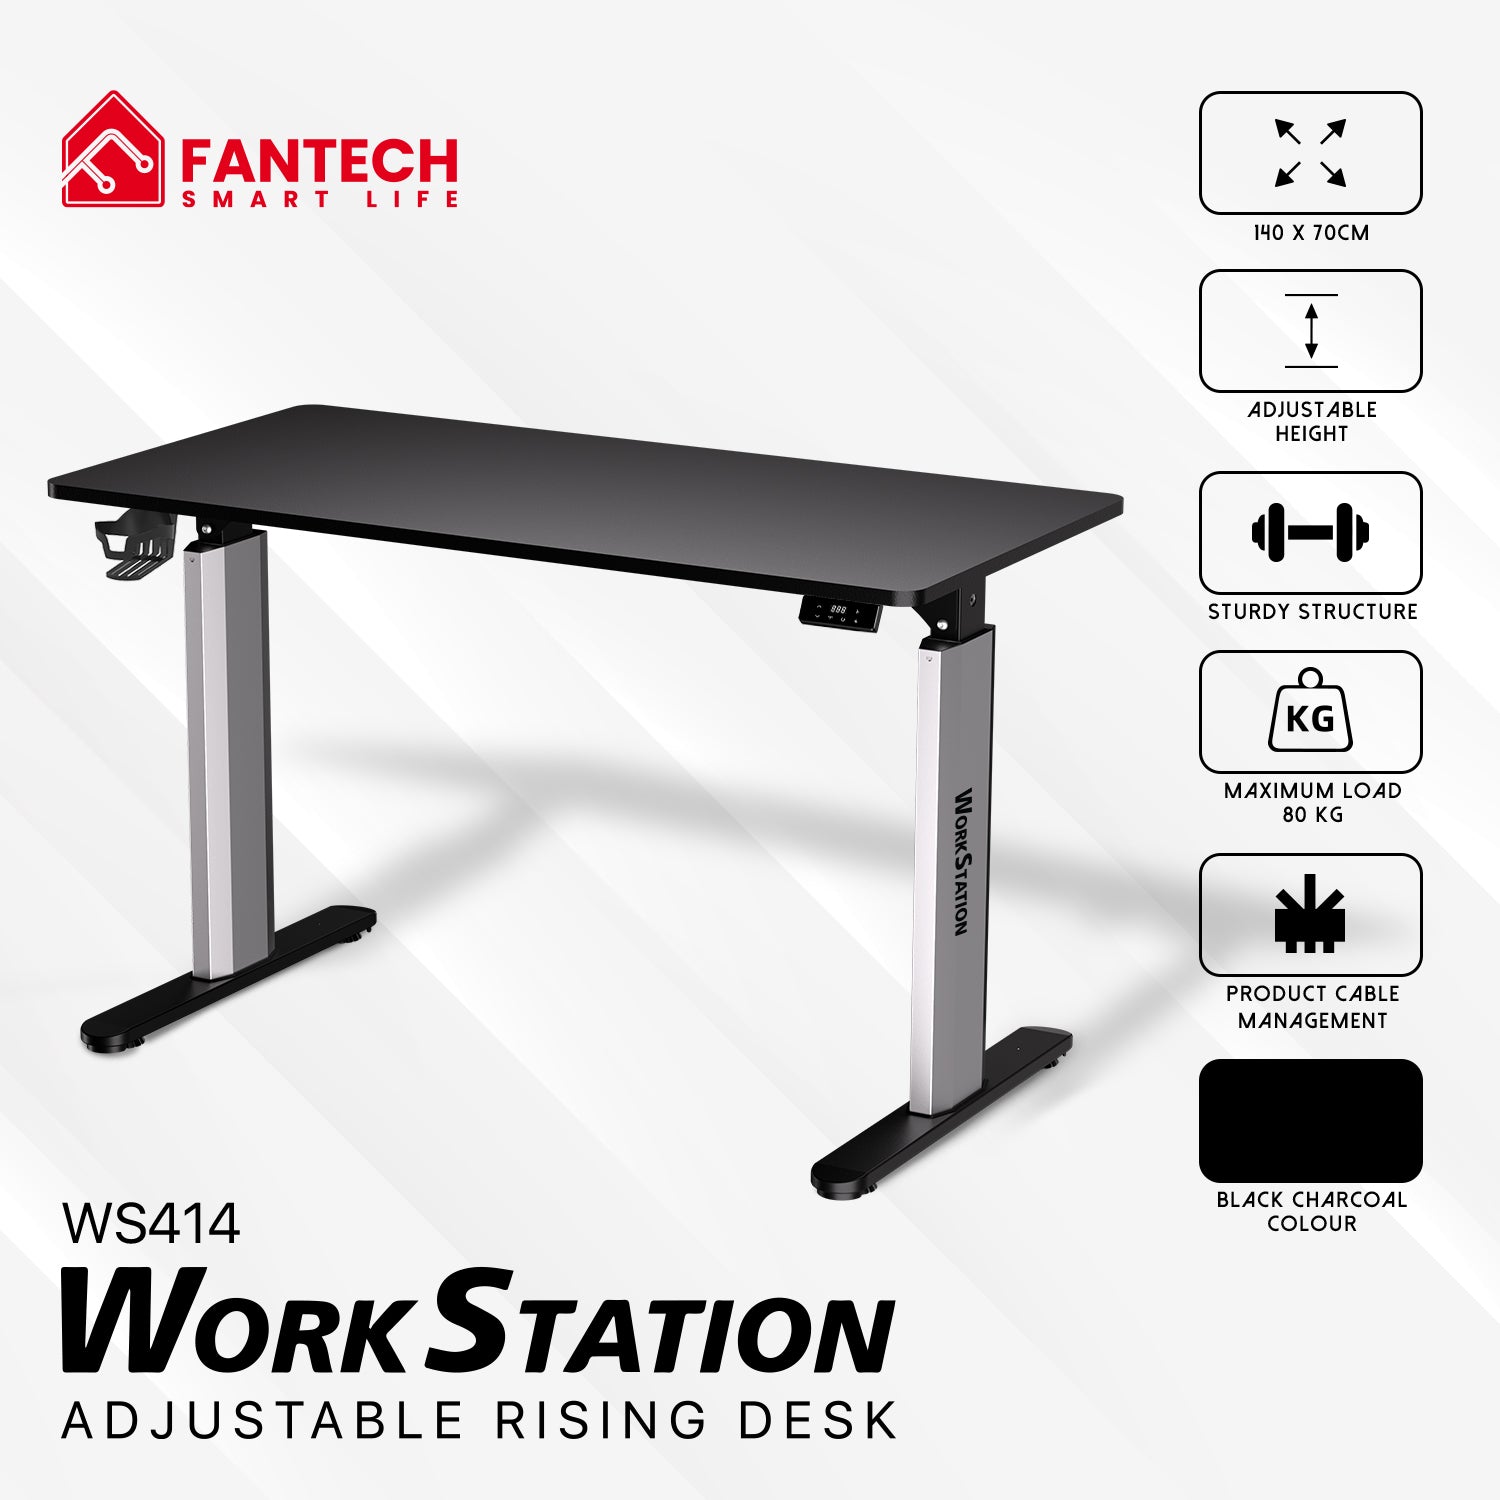 Fantech WS414 Work Station Asjustable Rising Desk Desk & Chair 165 JOD